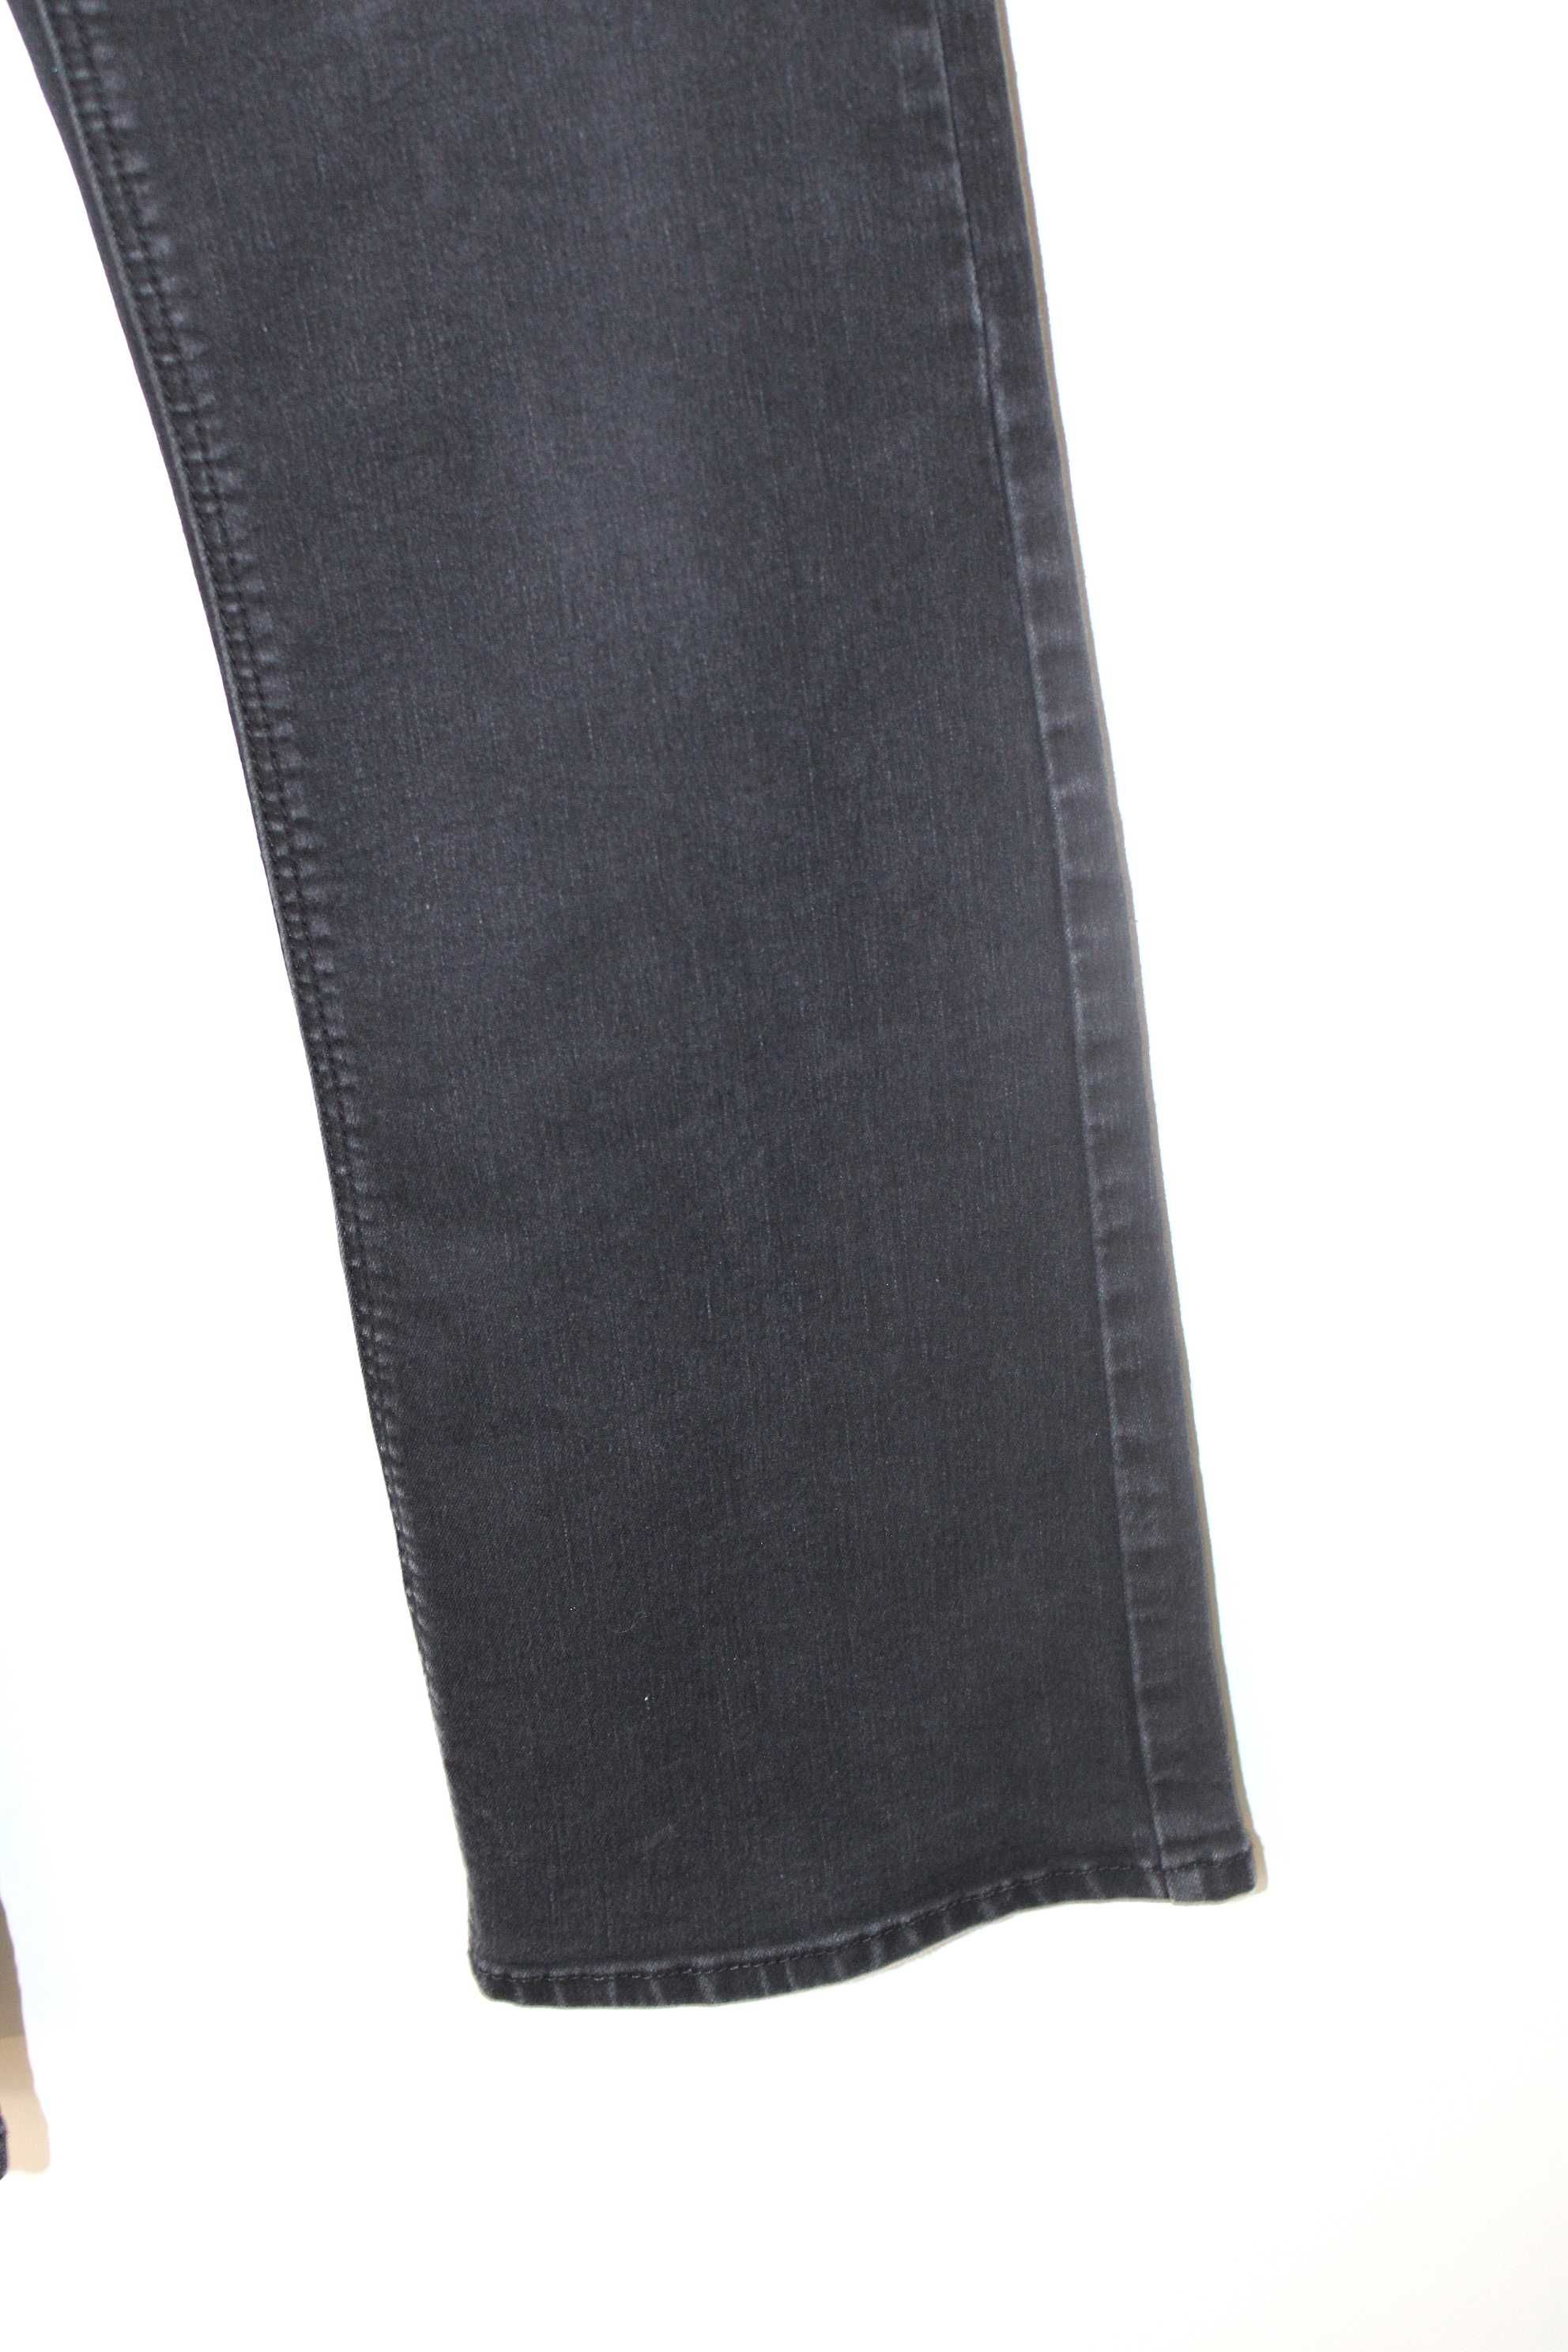 y4 GEORGE Damskie Czarne Spodnie Jeans Bootcut 40 L